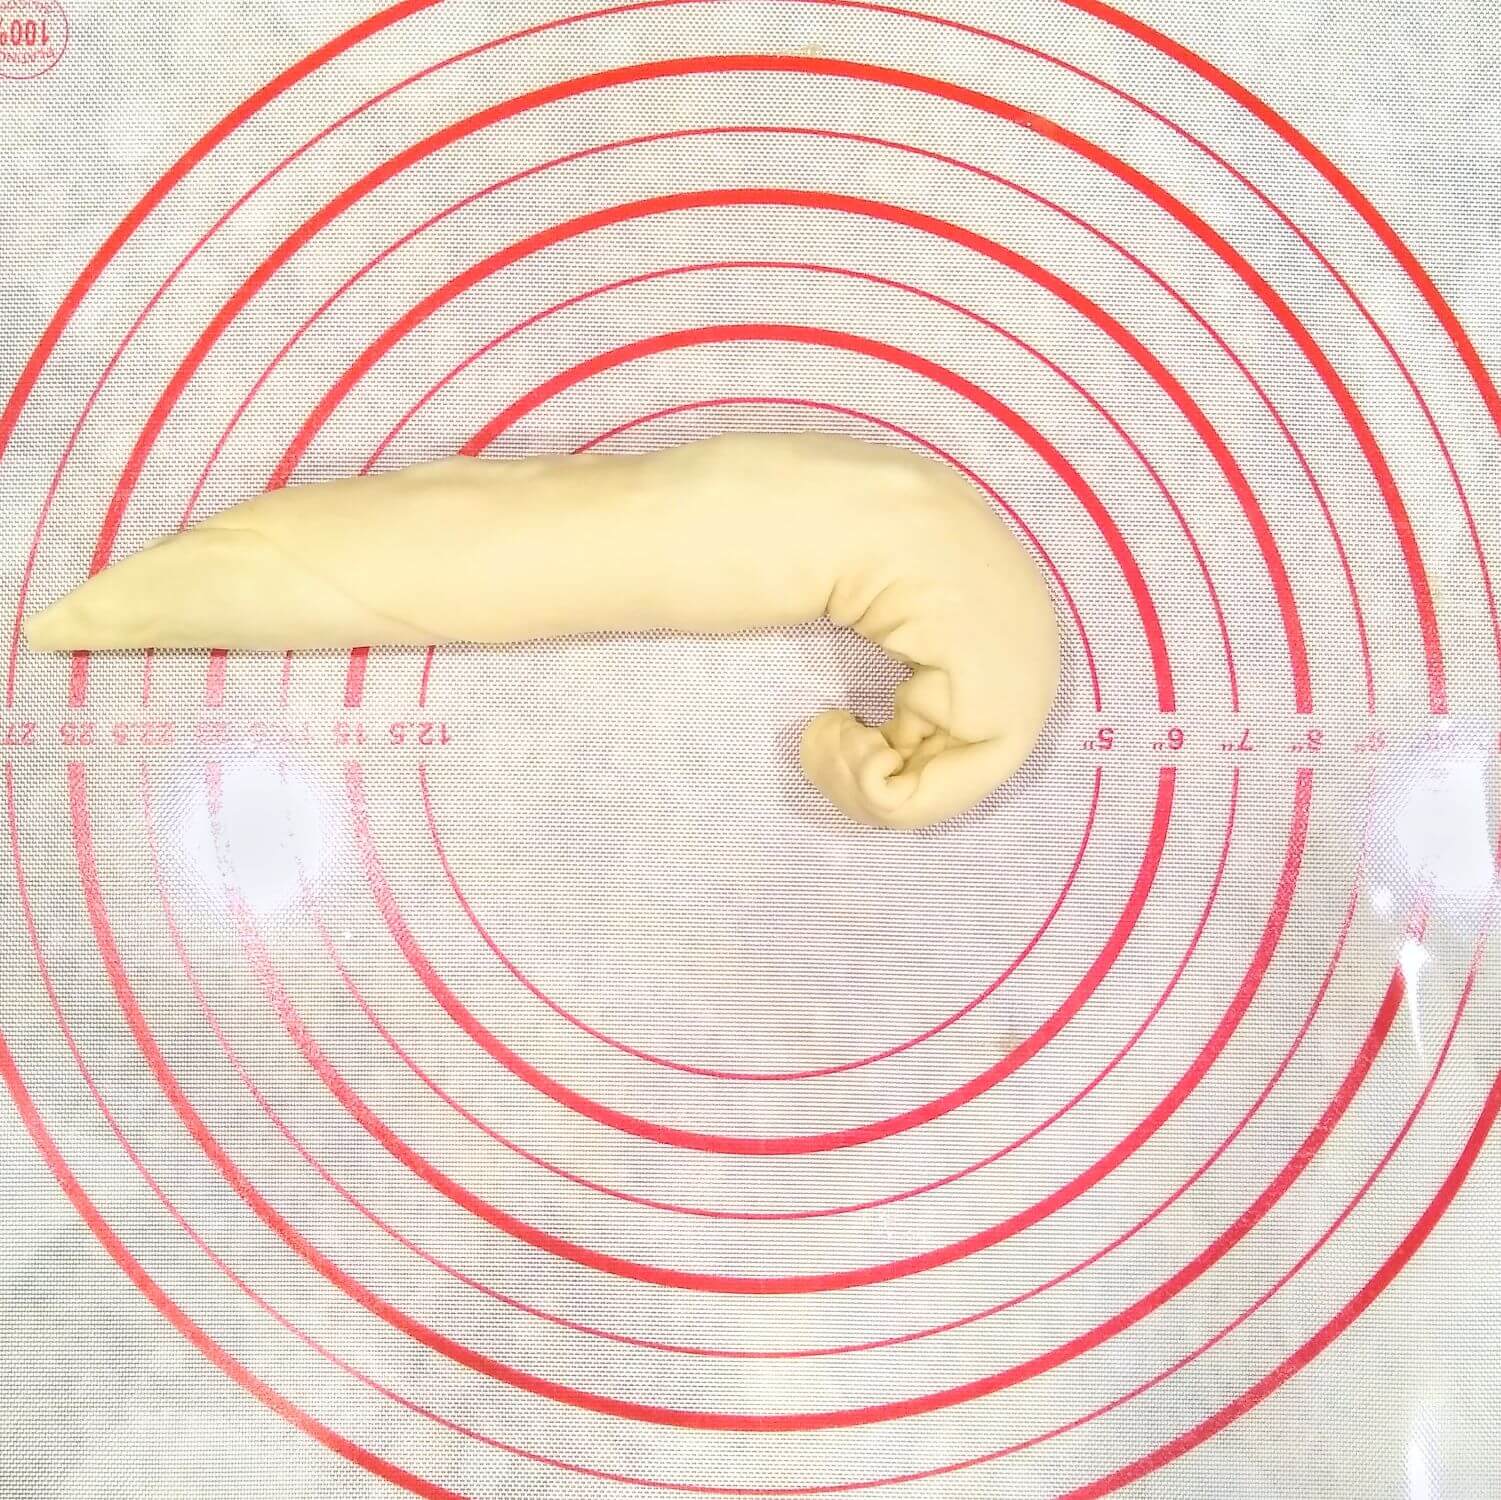 Chinese scallion pancakes spiraling